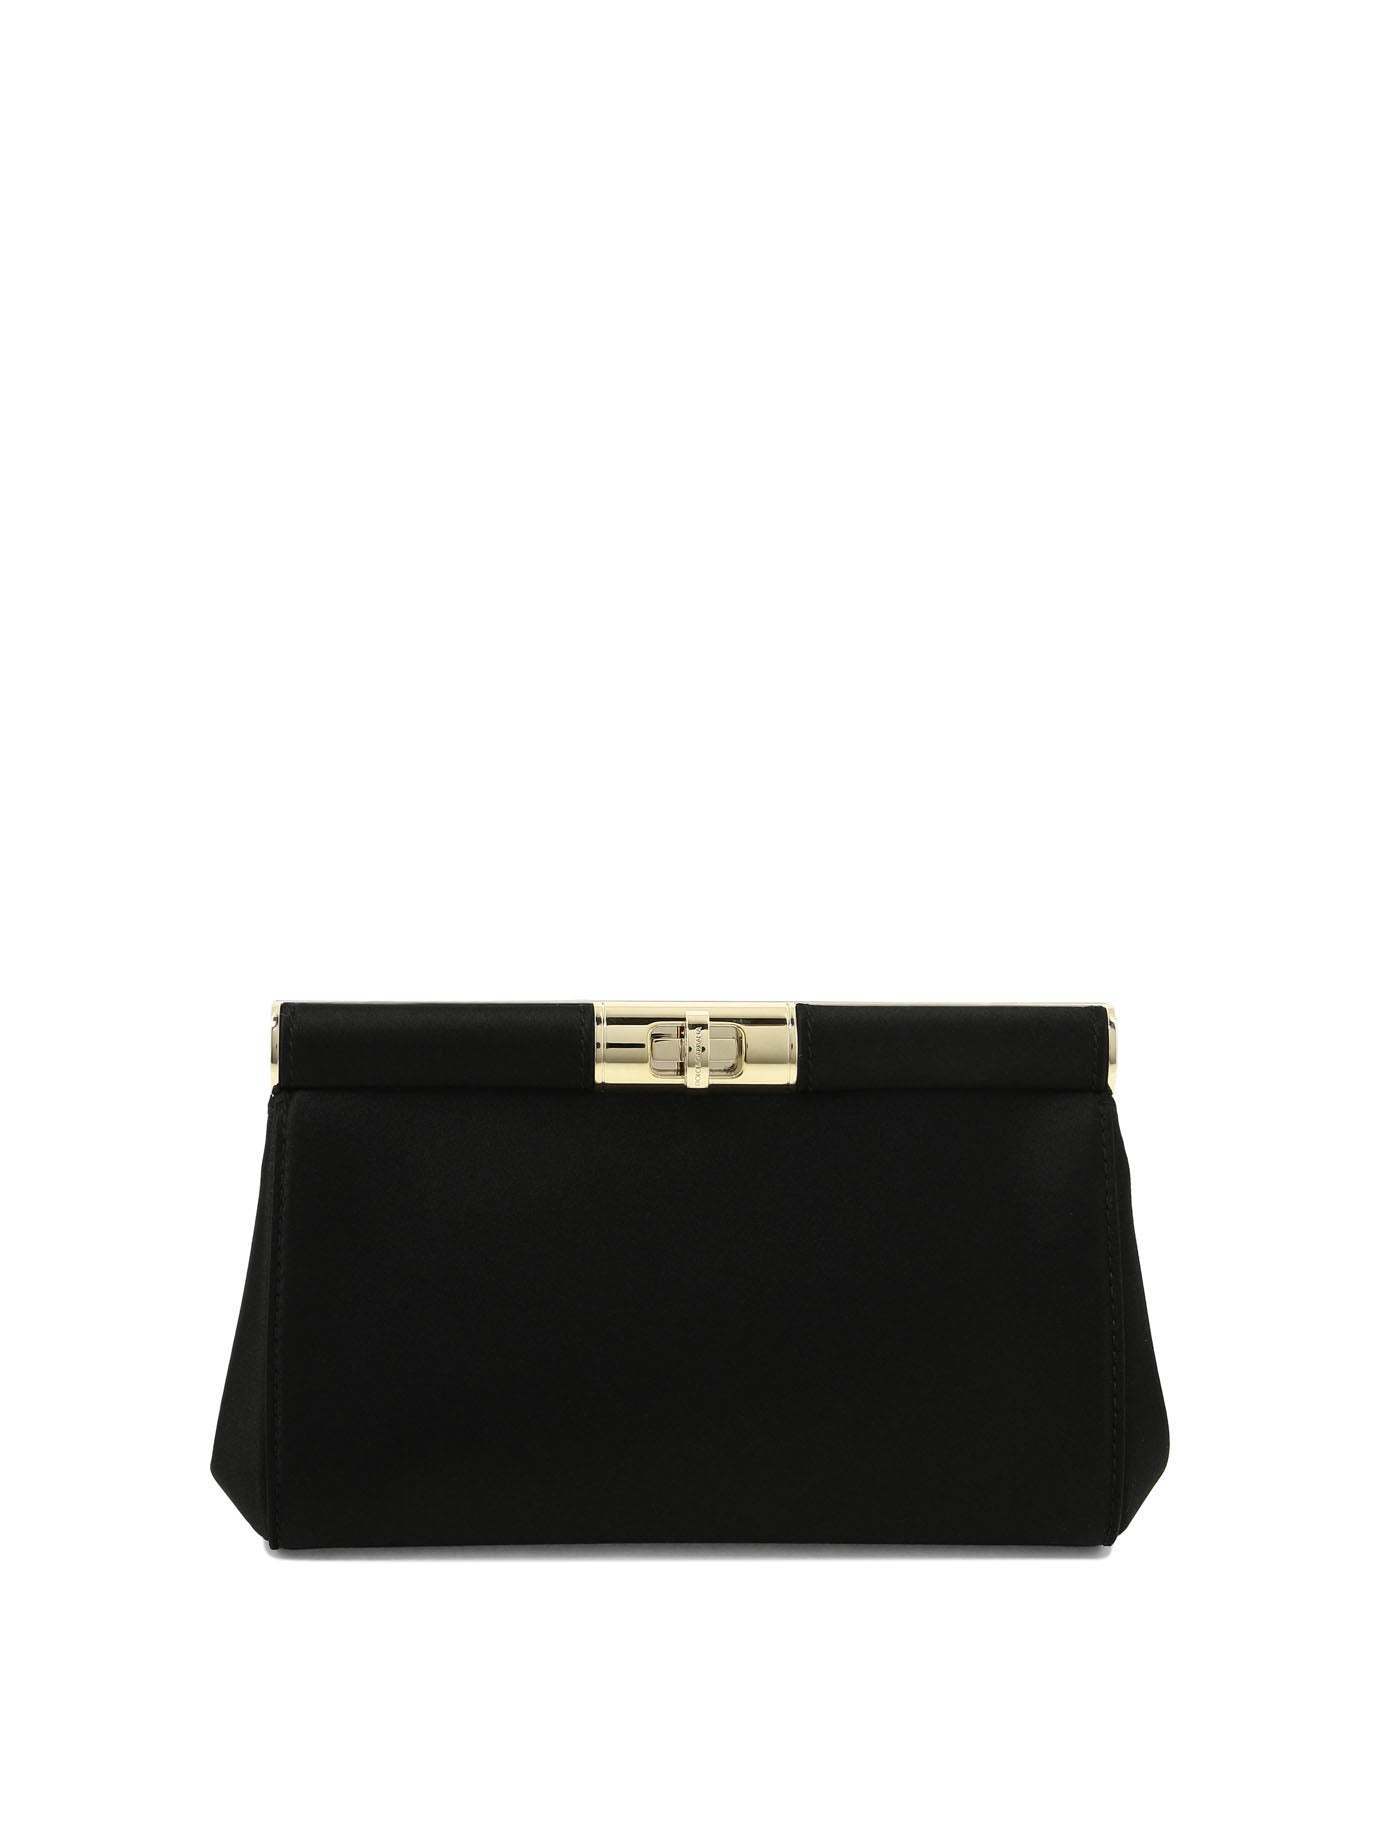 Shop Dolce & Gabbana "marlene Small" Shoulder Bag